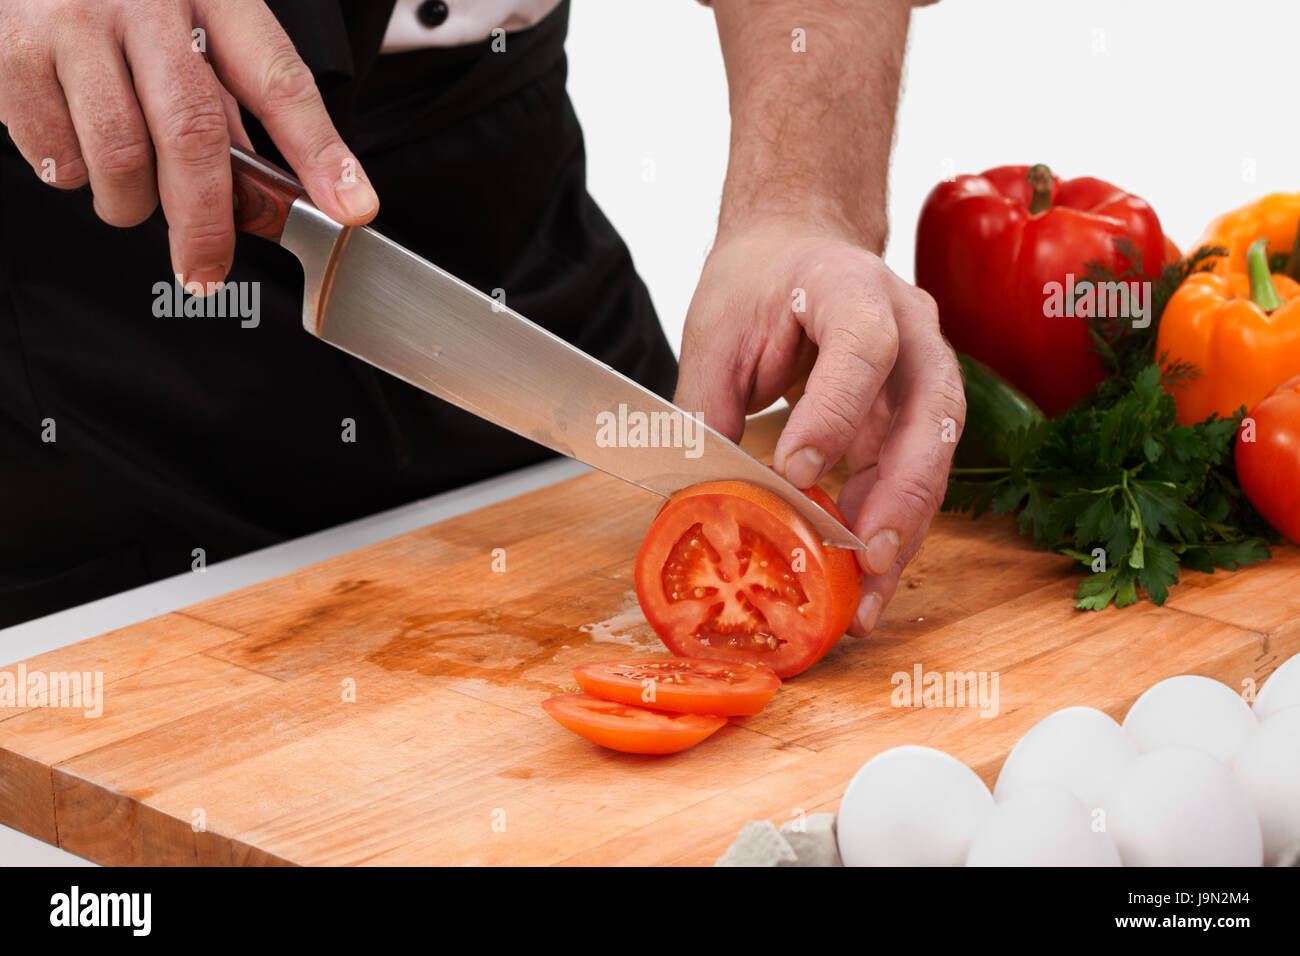 Нож режет овощи. Разрезка овощей на доске разделочной. Нож разрезает помидор. Нарезанные помидоры на деревянной доске. Режут на разделочной доске.